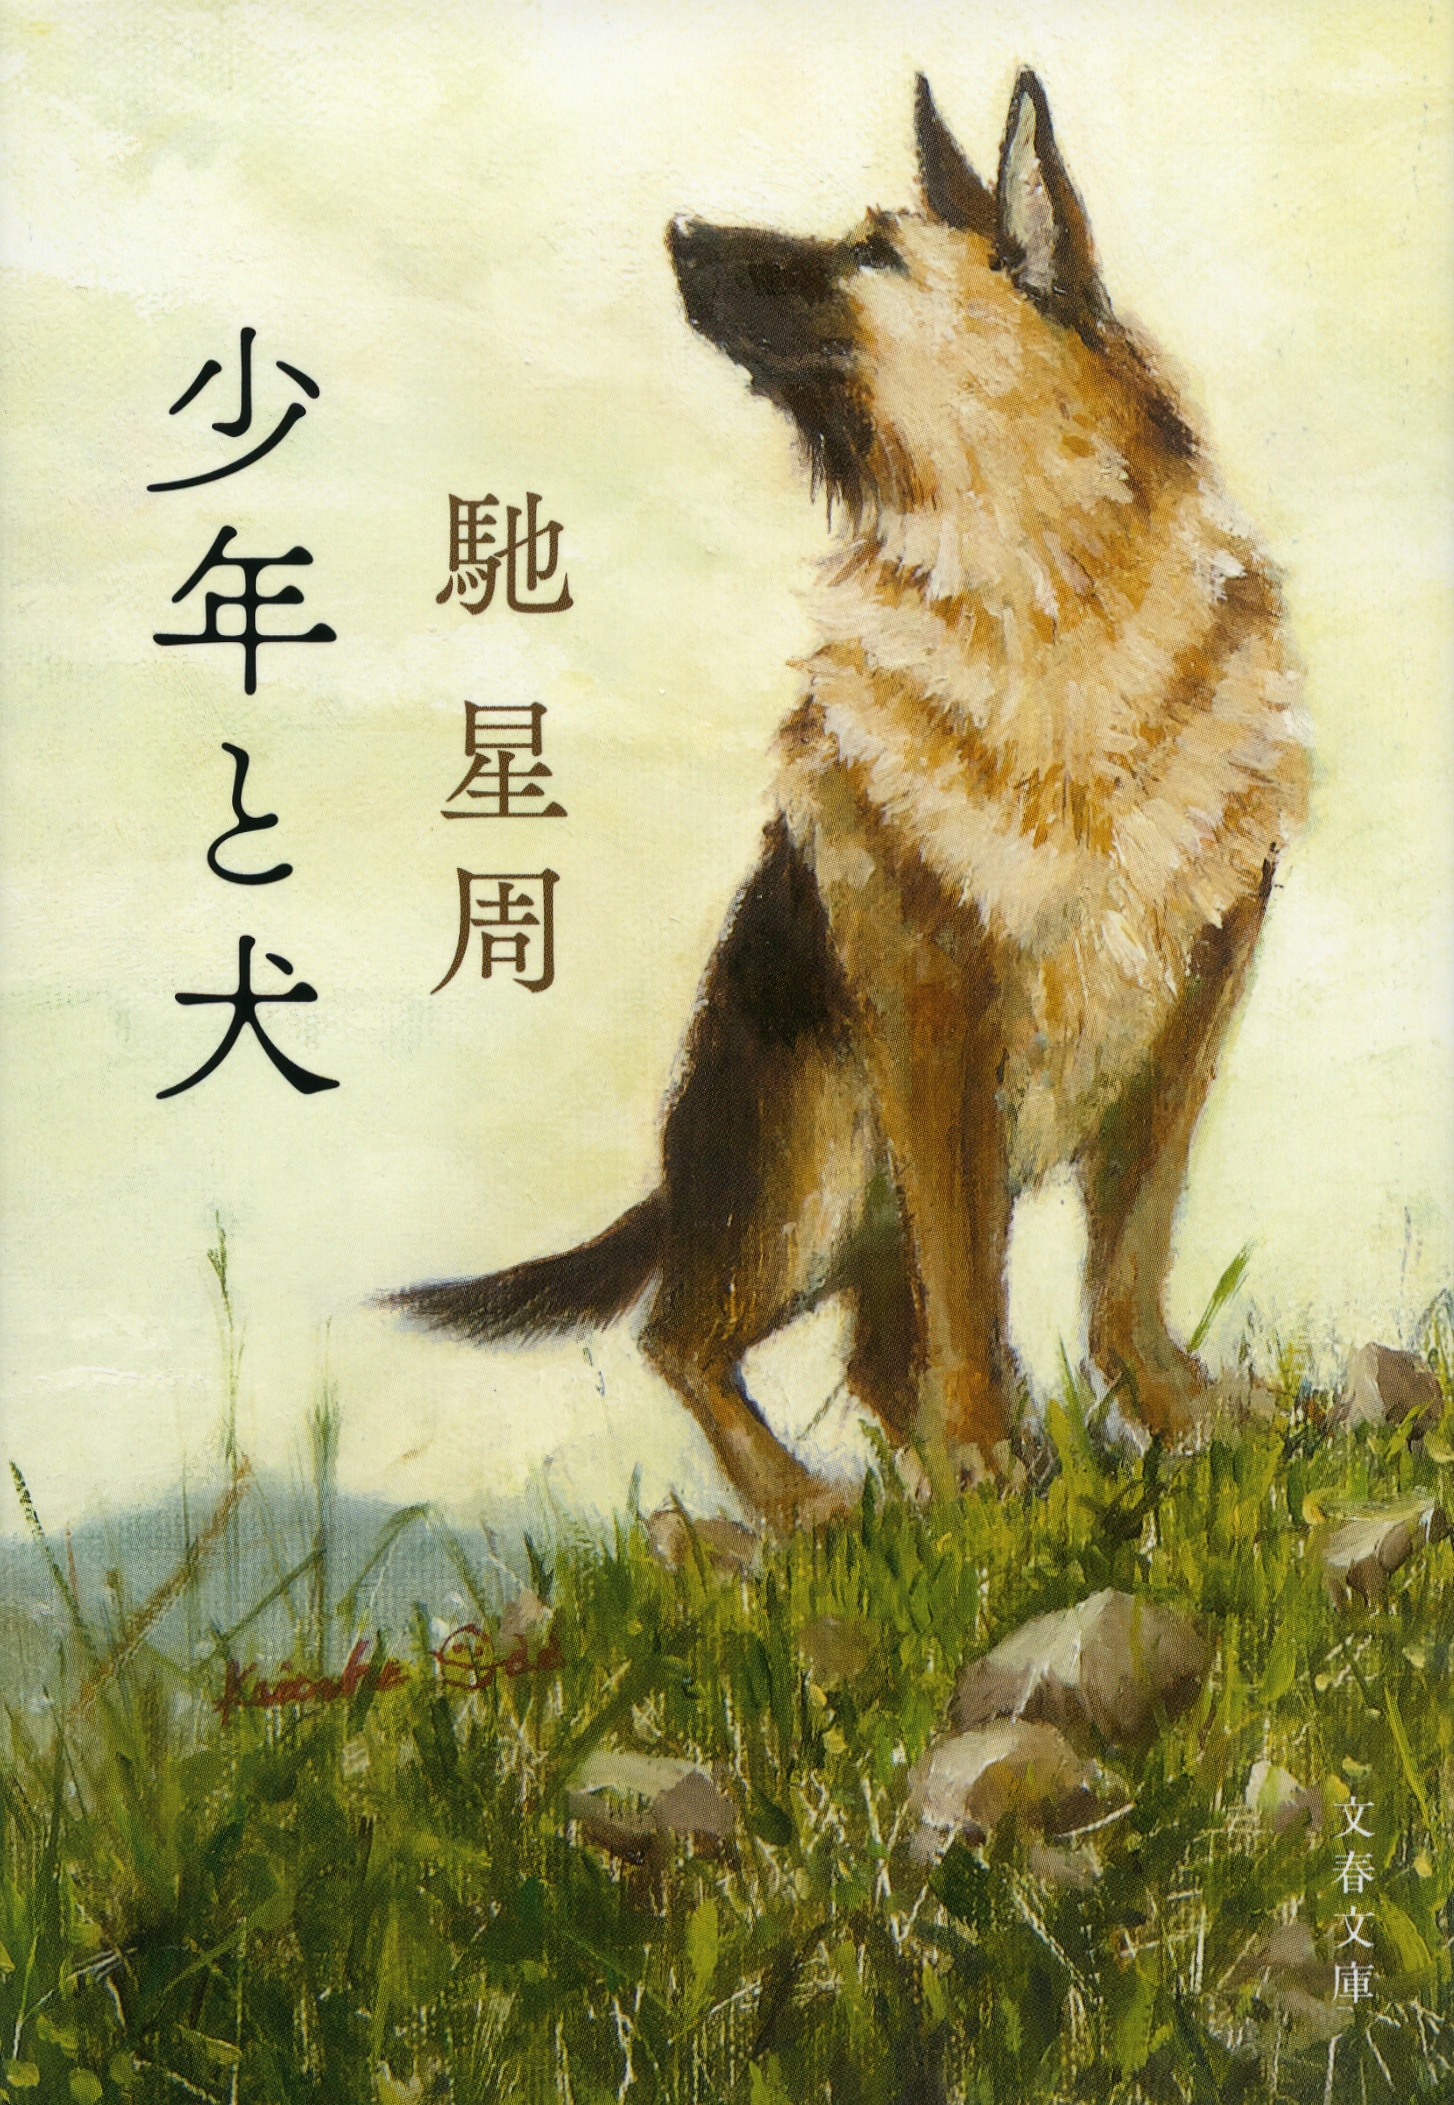 動物小説の範疇を超え、新しい小説として普遍性を獲得した直木賞受賞作